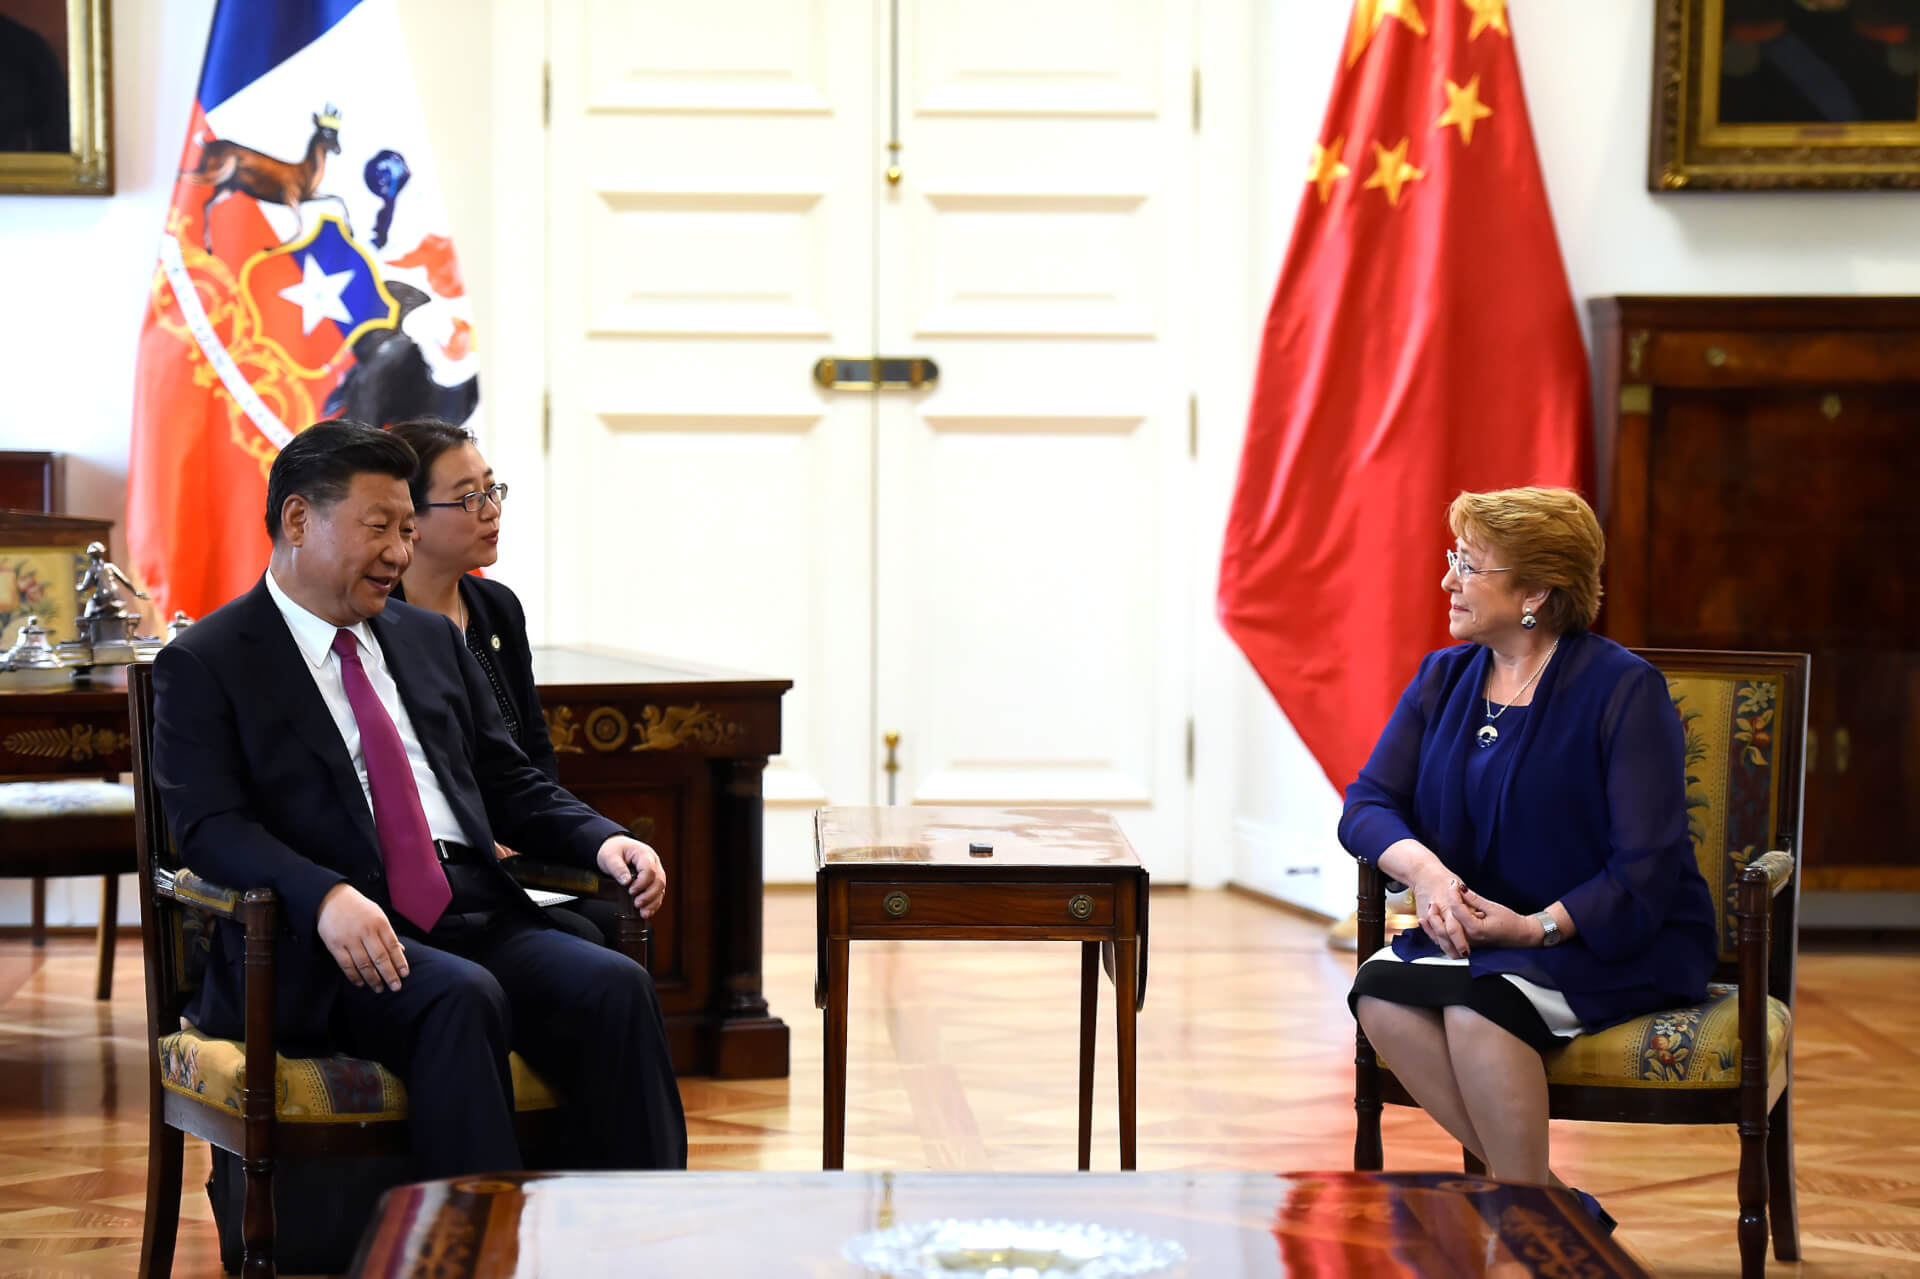 UN Rights Chief Bachelet Begins “Closed Loop” China Tour, to Visit Xinjiang